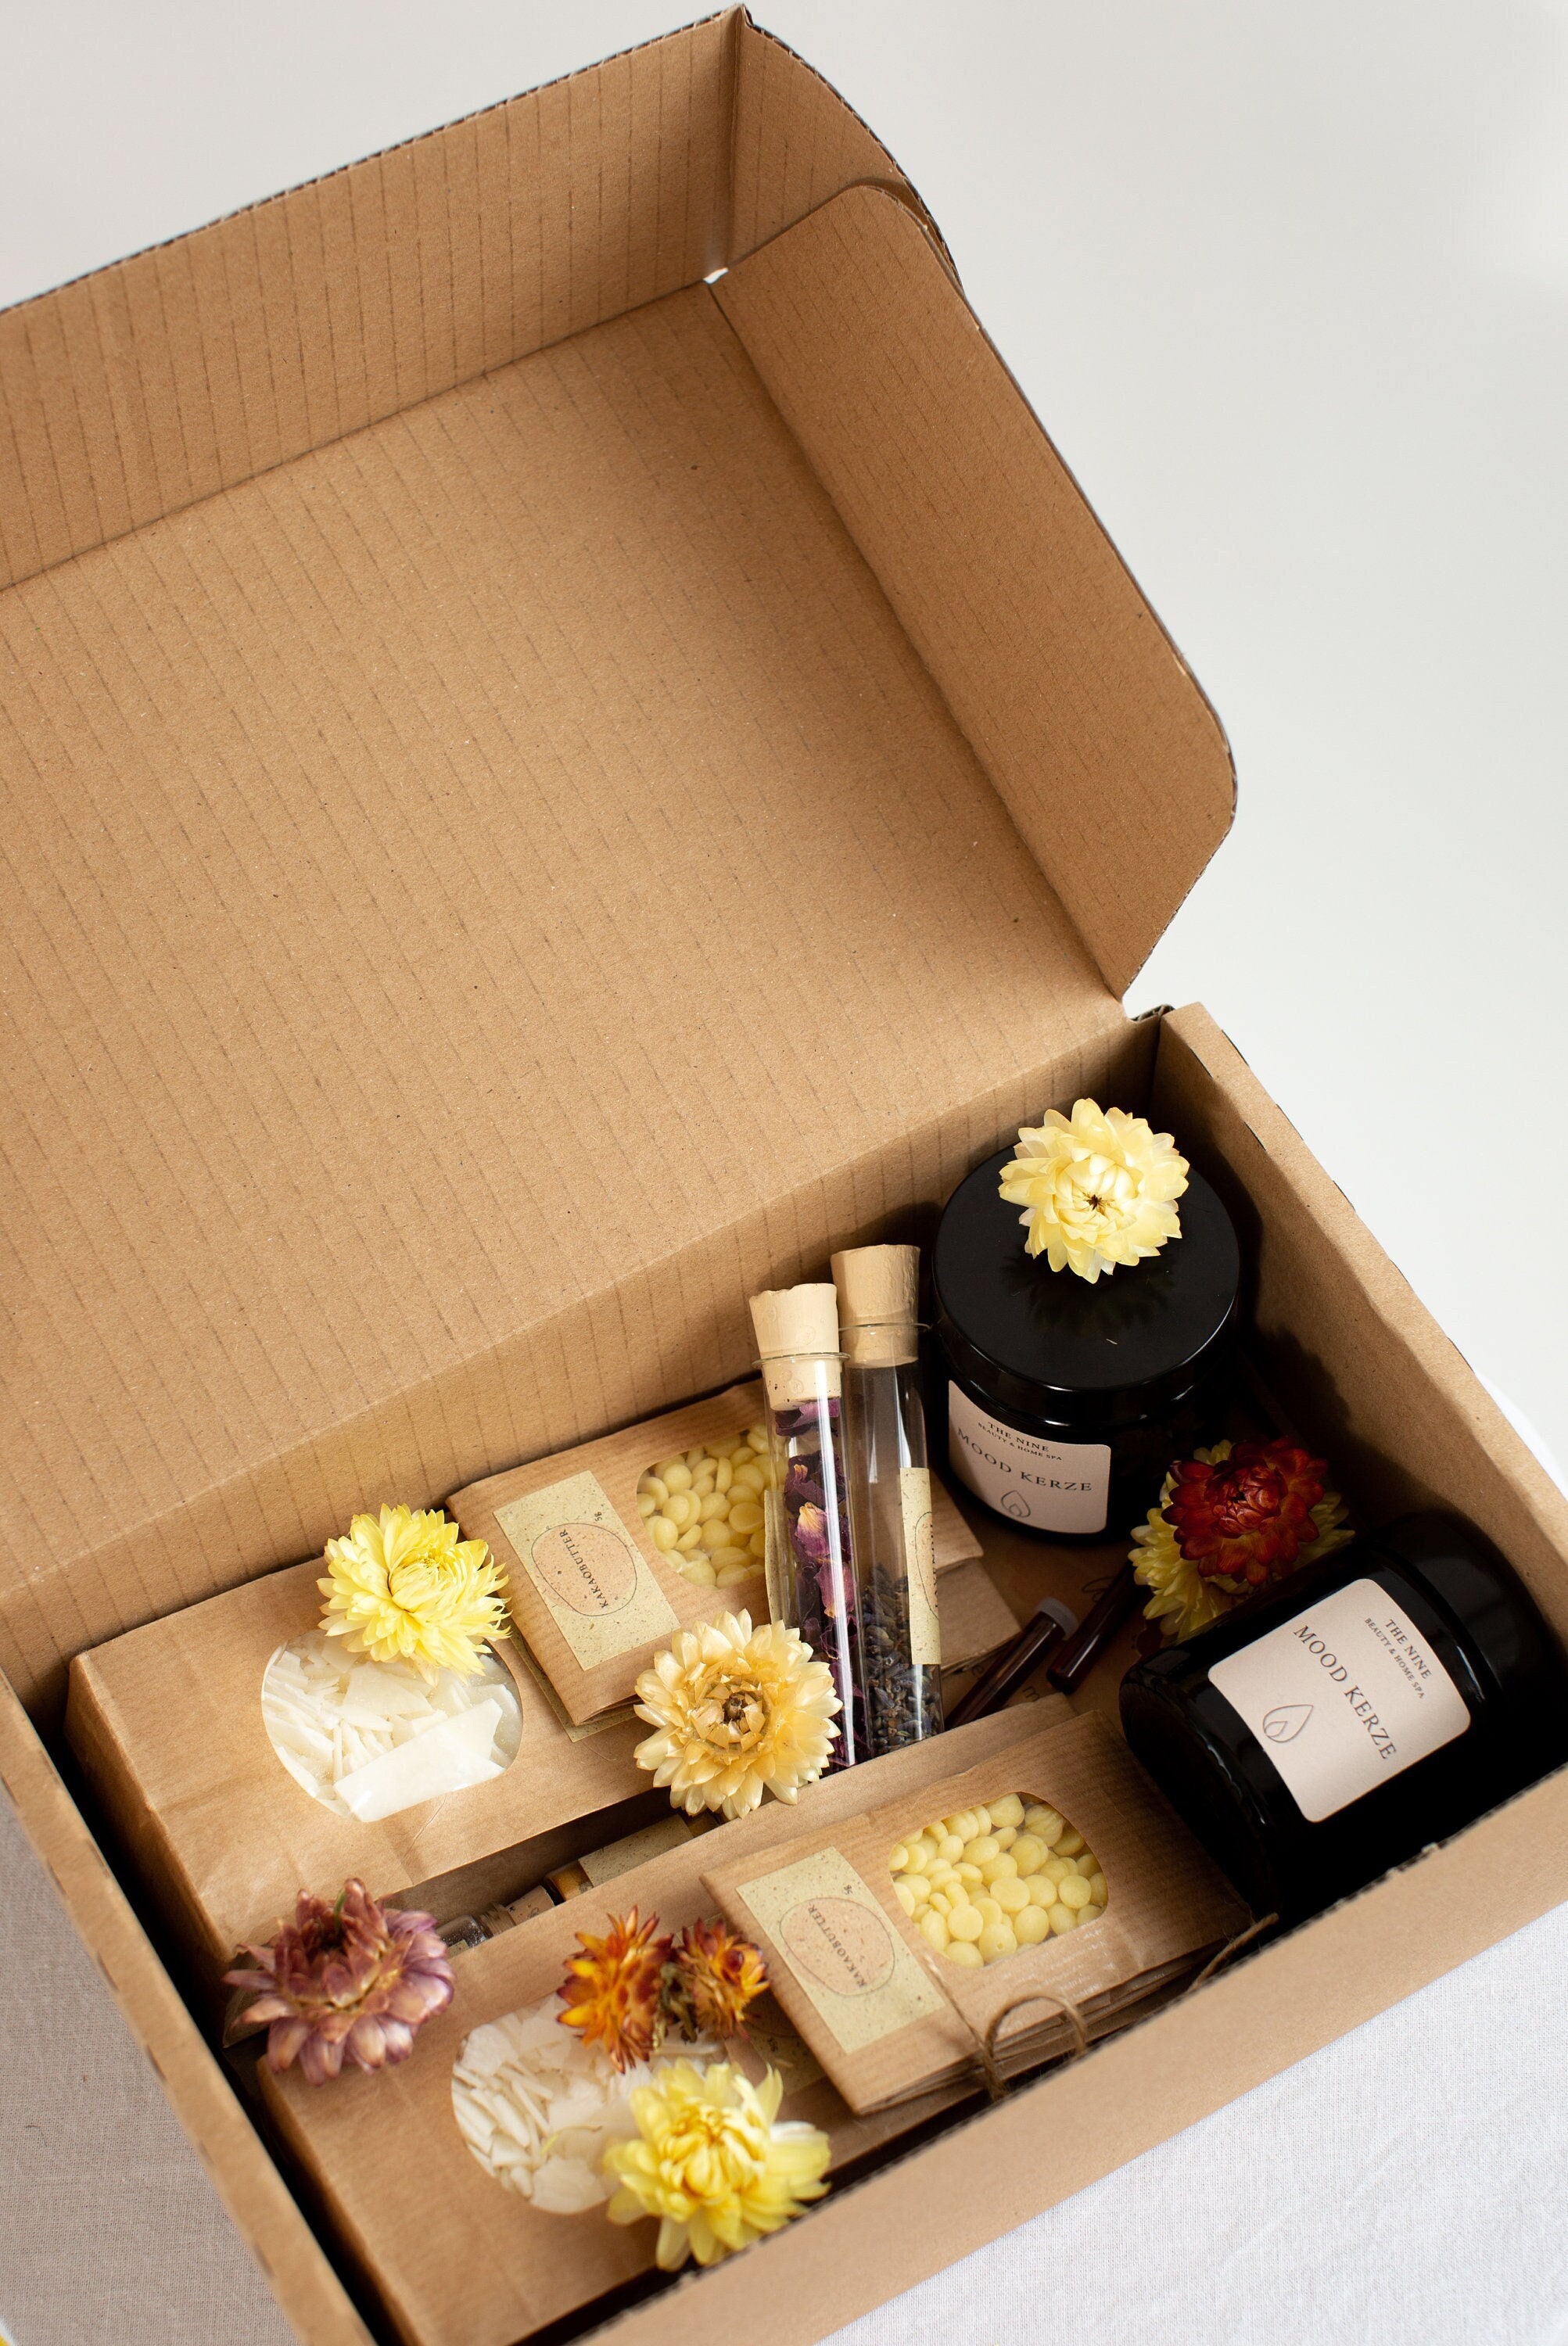 DIY Kerzen Set Box Kerzen selber machen Geschenk Duftkerzen - .de